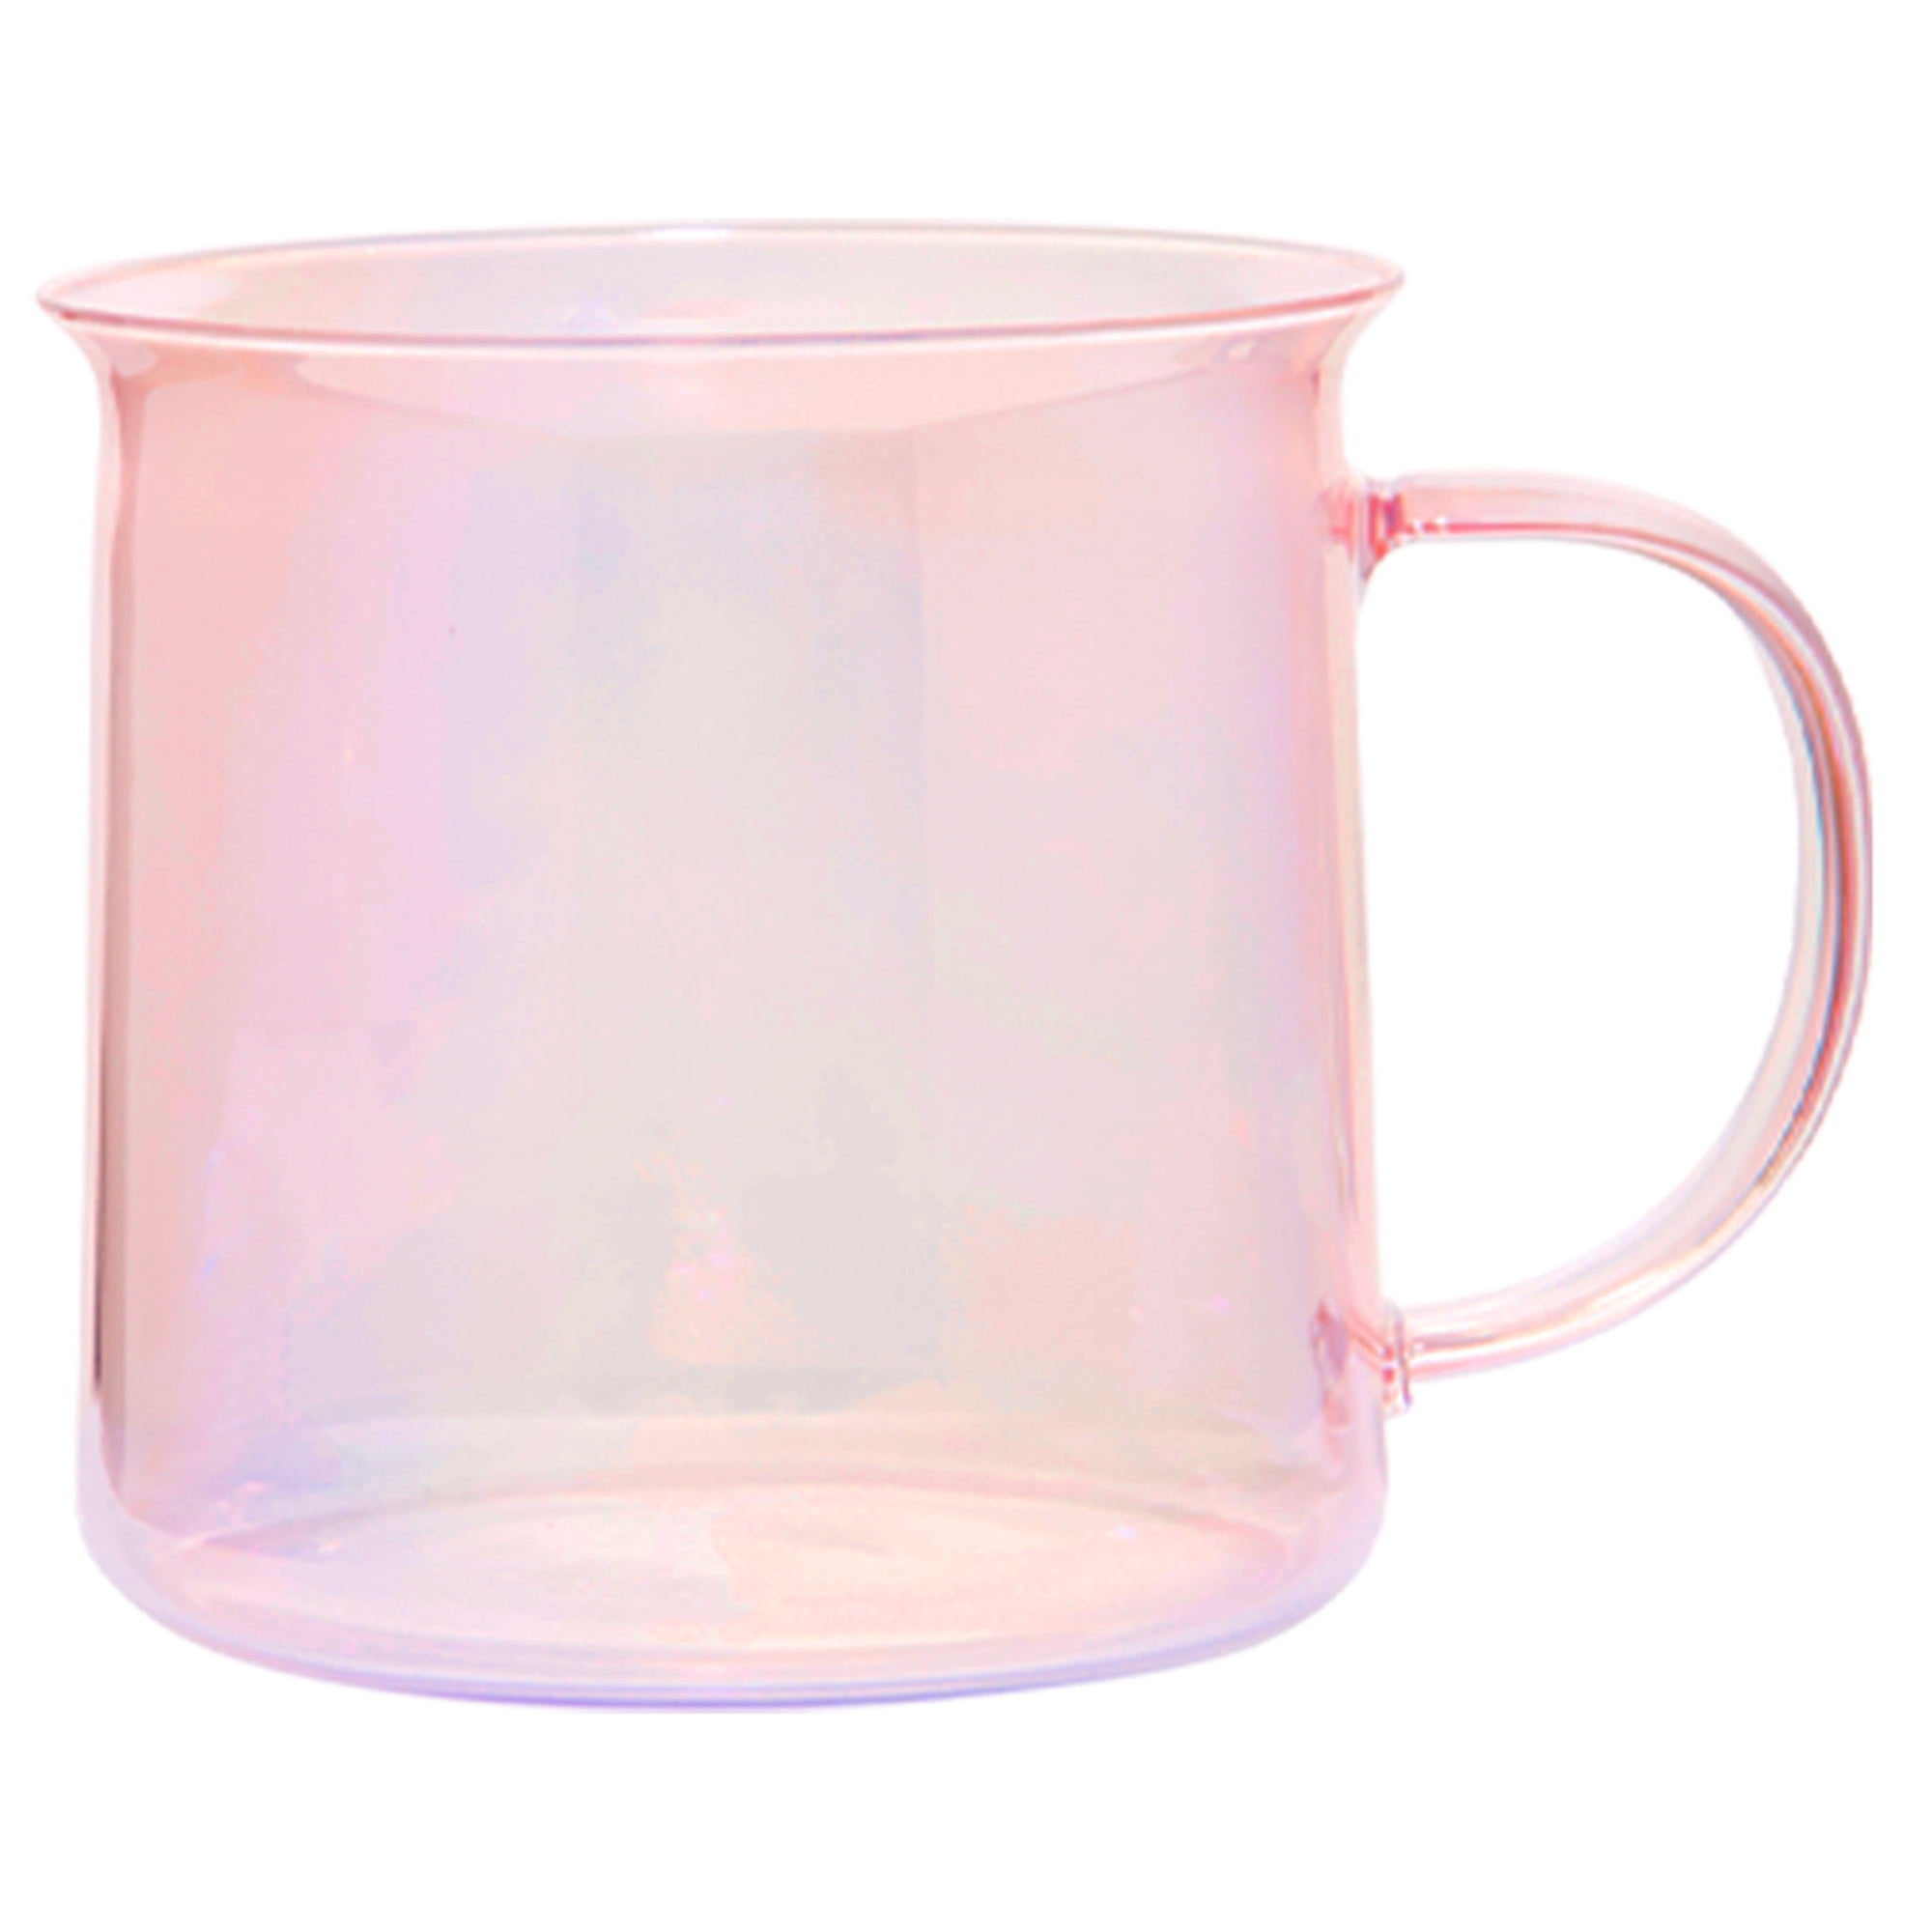 Glasstic - 16oz Clear Glass - Pink Flip Cap